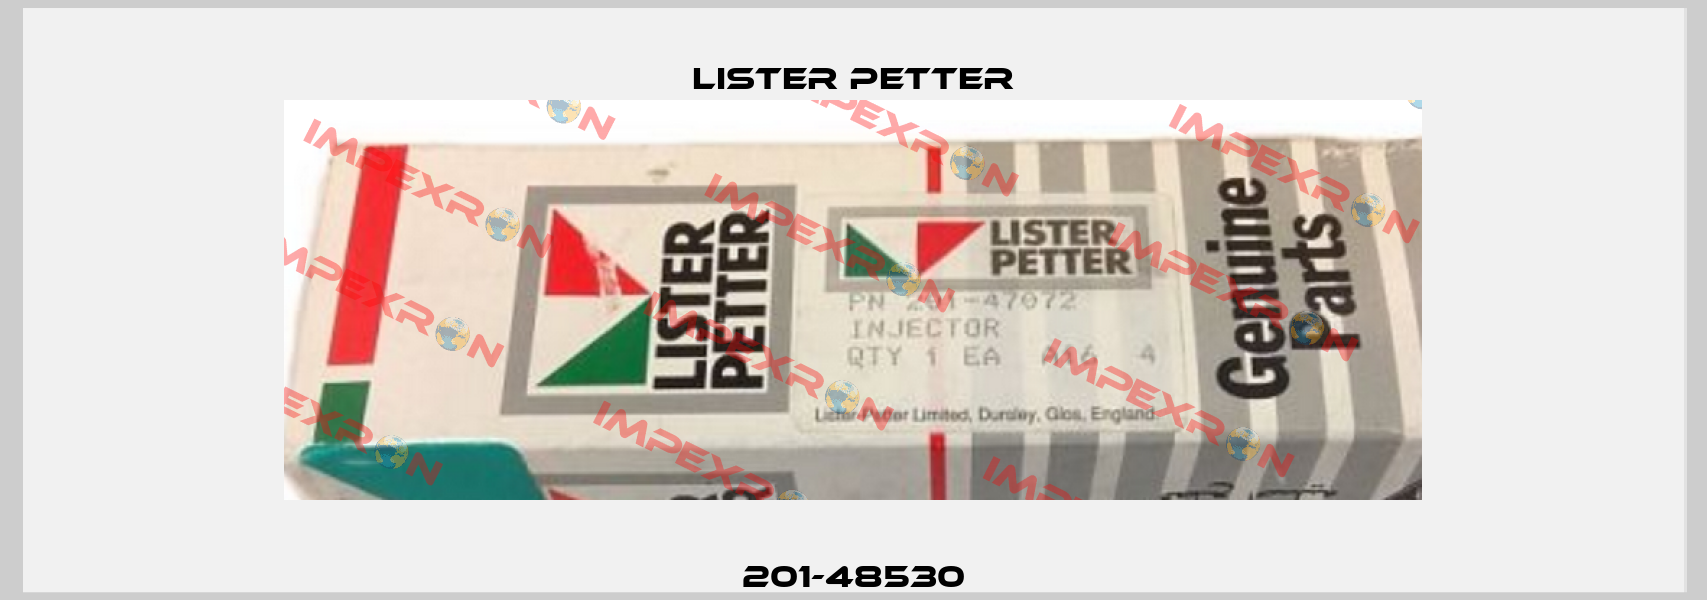 201-48530 Lister Petter